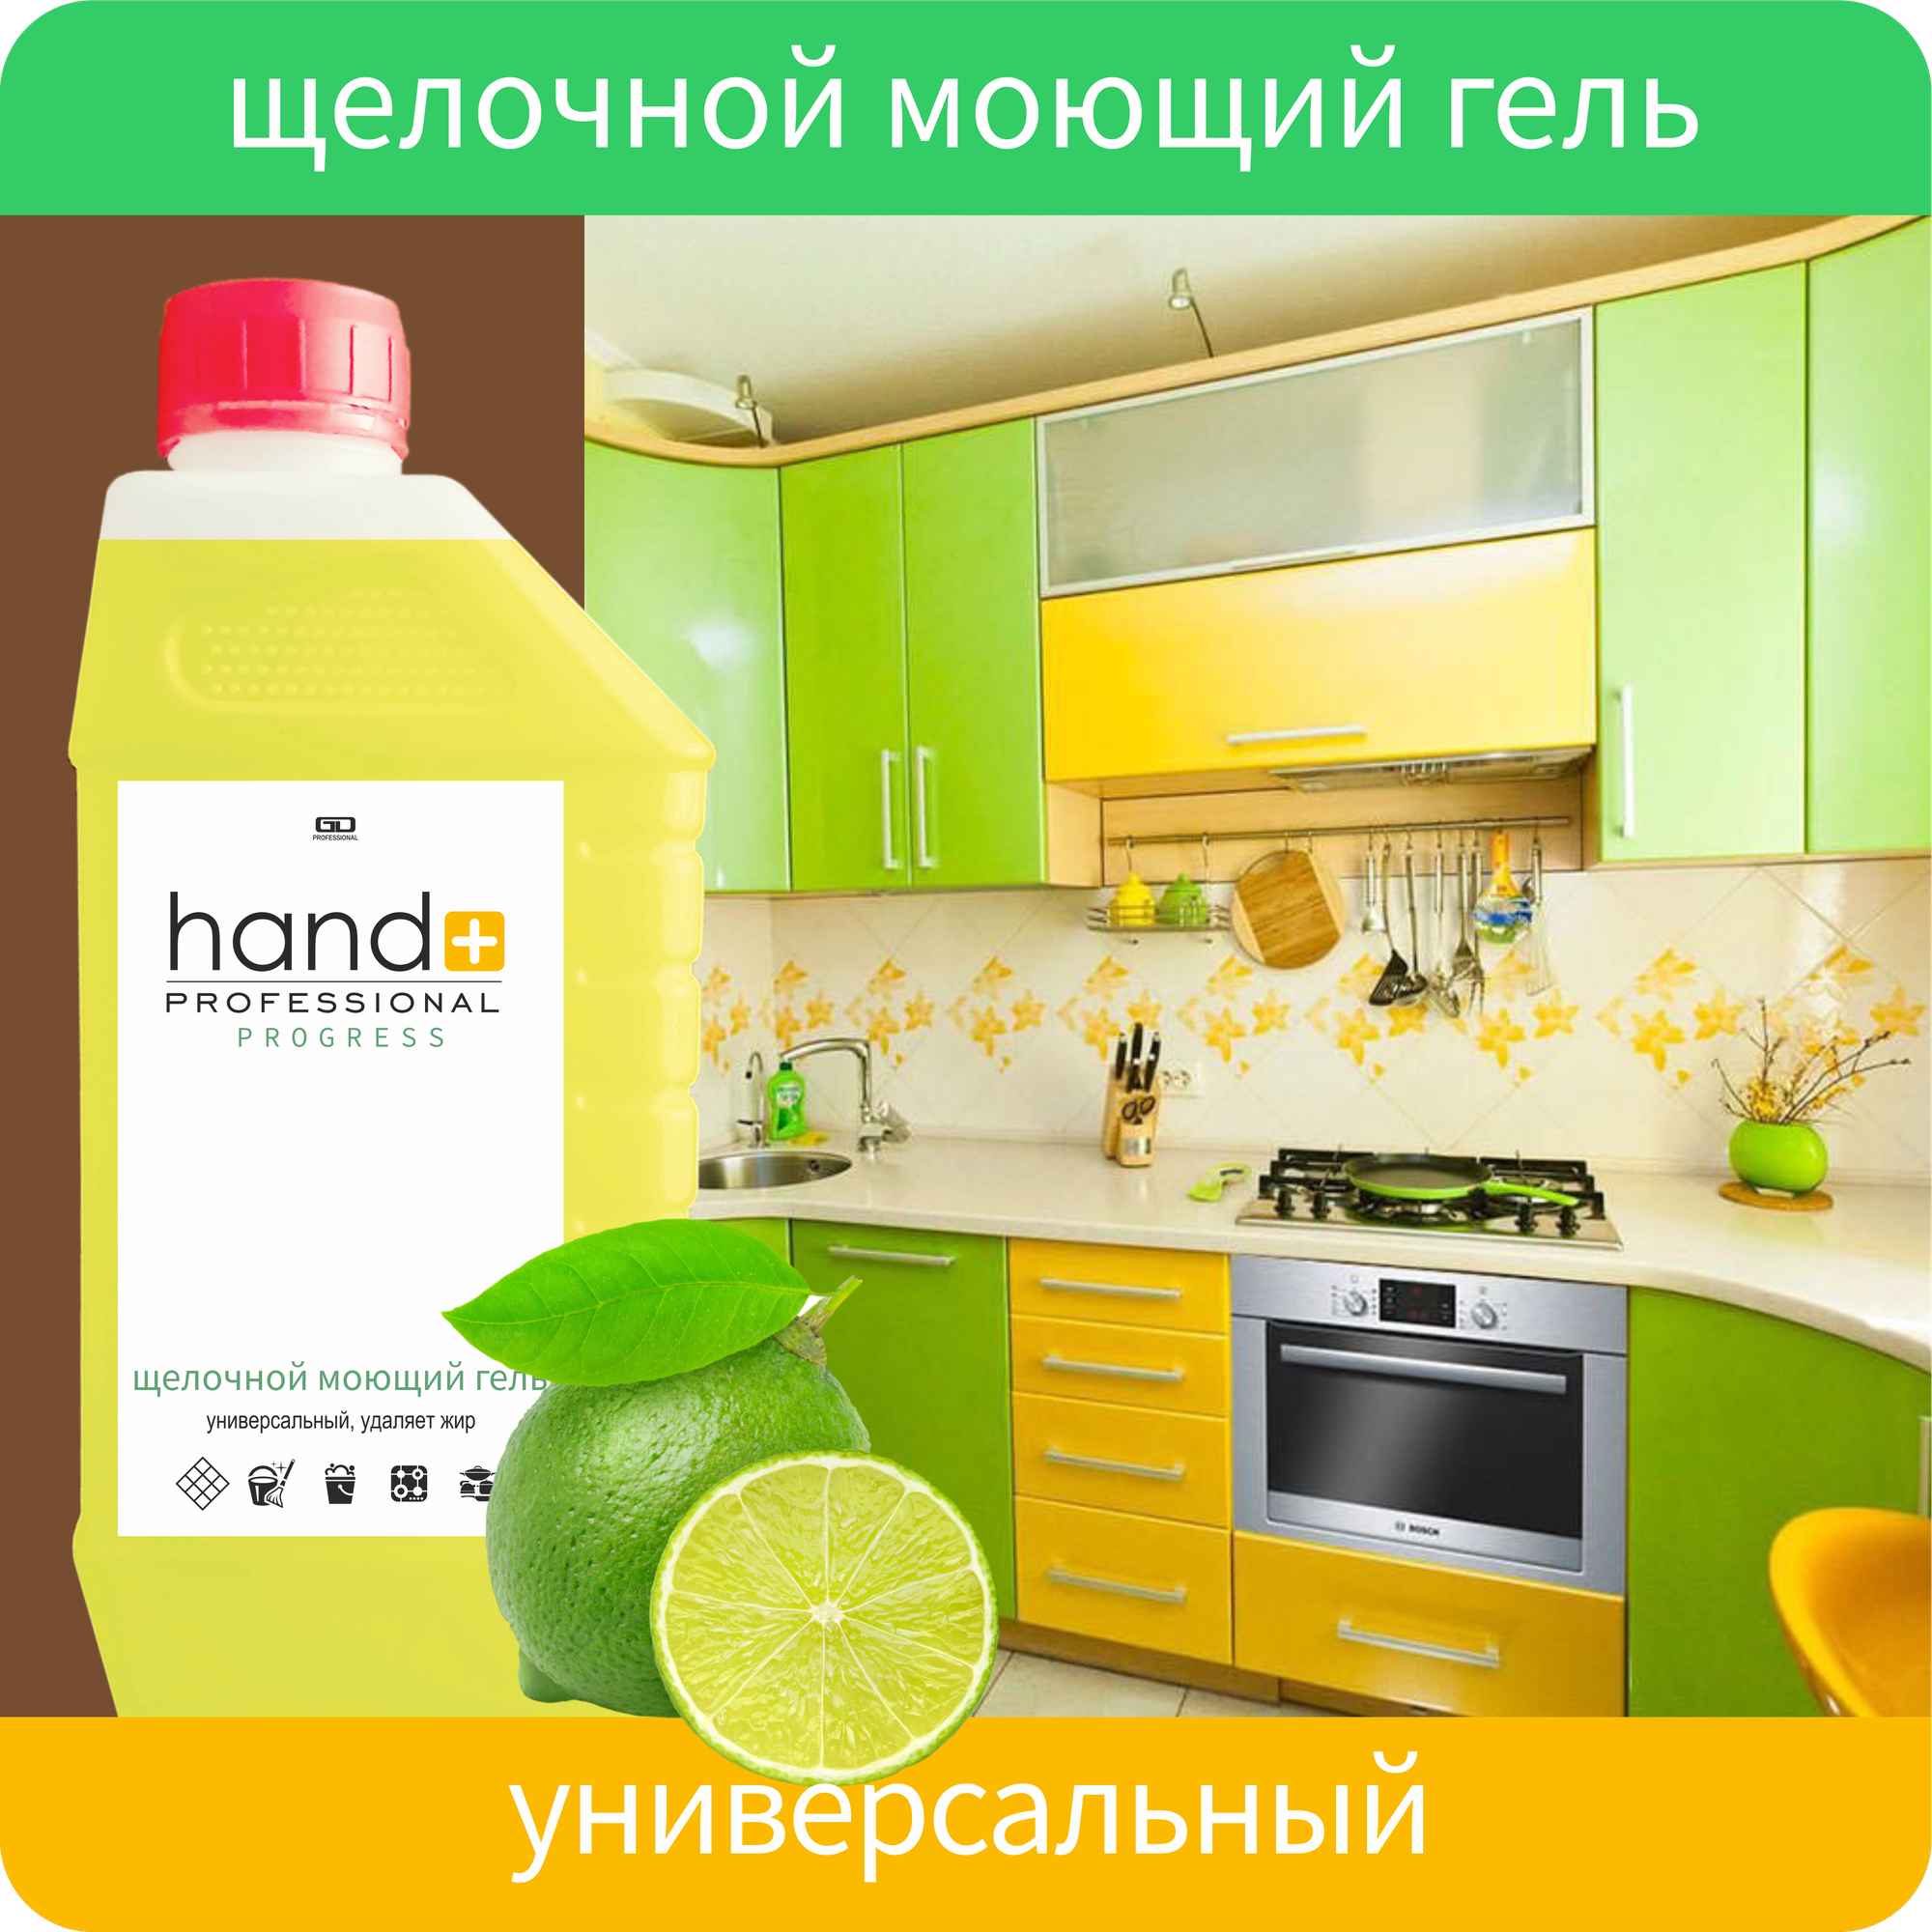 Щелочной моющий гель HAND+ Professional Progress, зеленый лимон, 1 кг